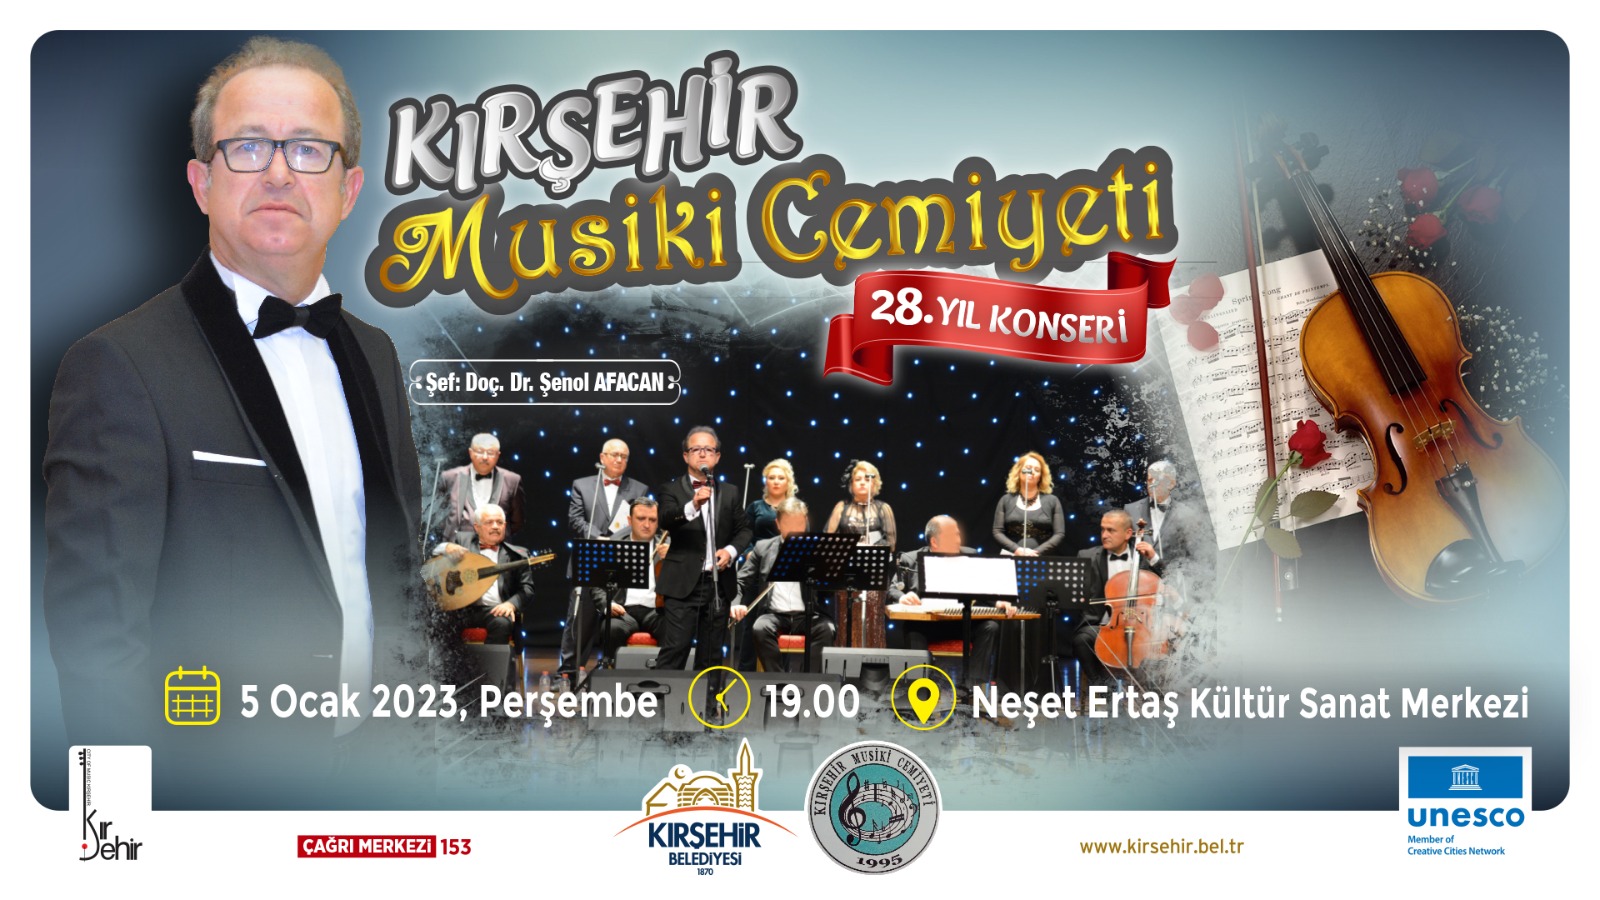 Kırşehir Musiki Cemiyeti 28. Yıl Konseri